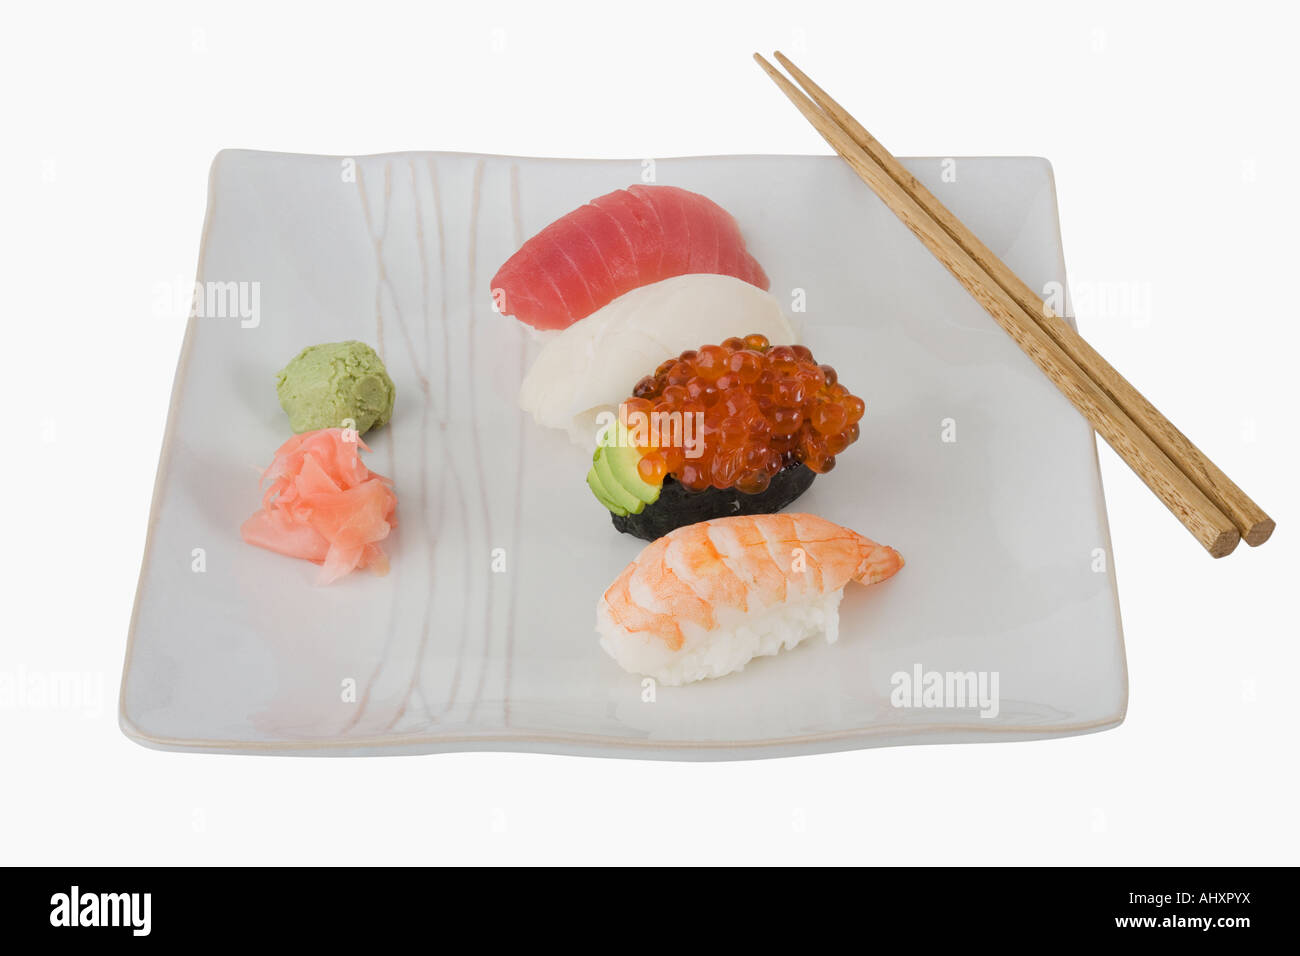 Cerca de surtido de sushi en la placa Foto de stock